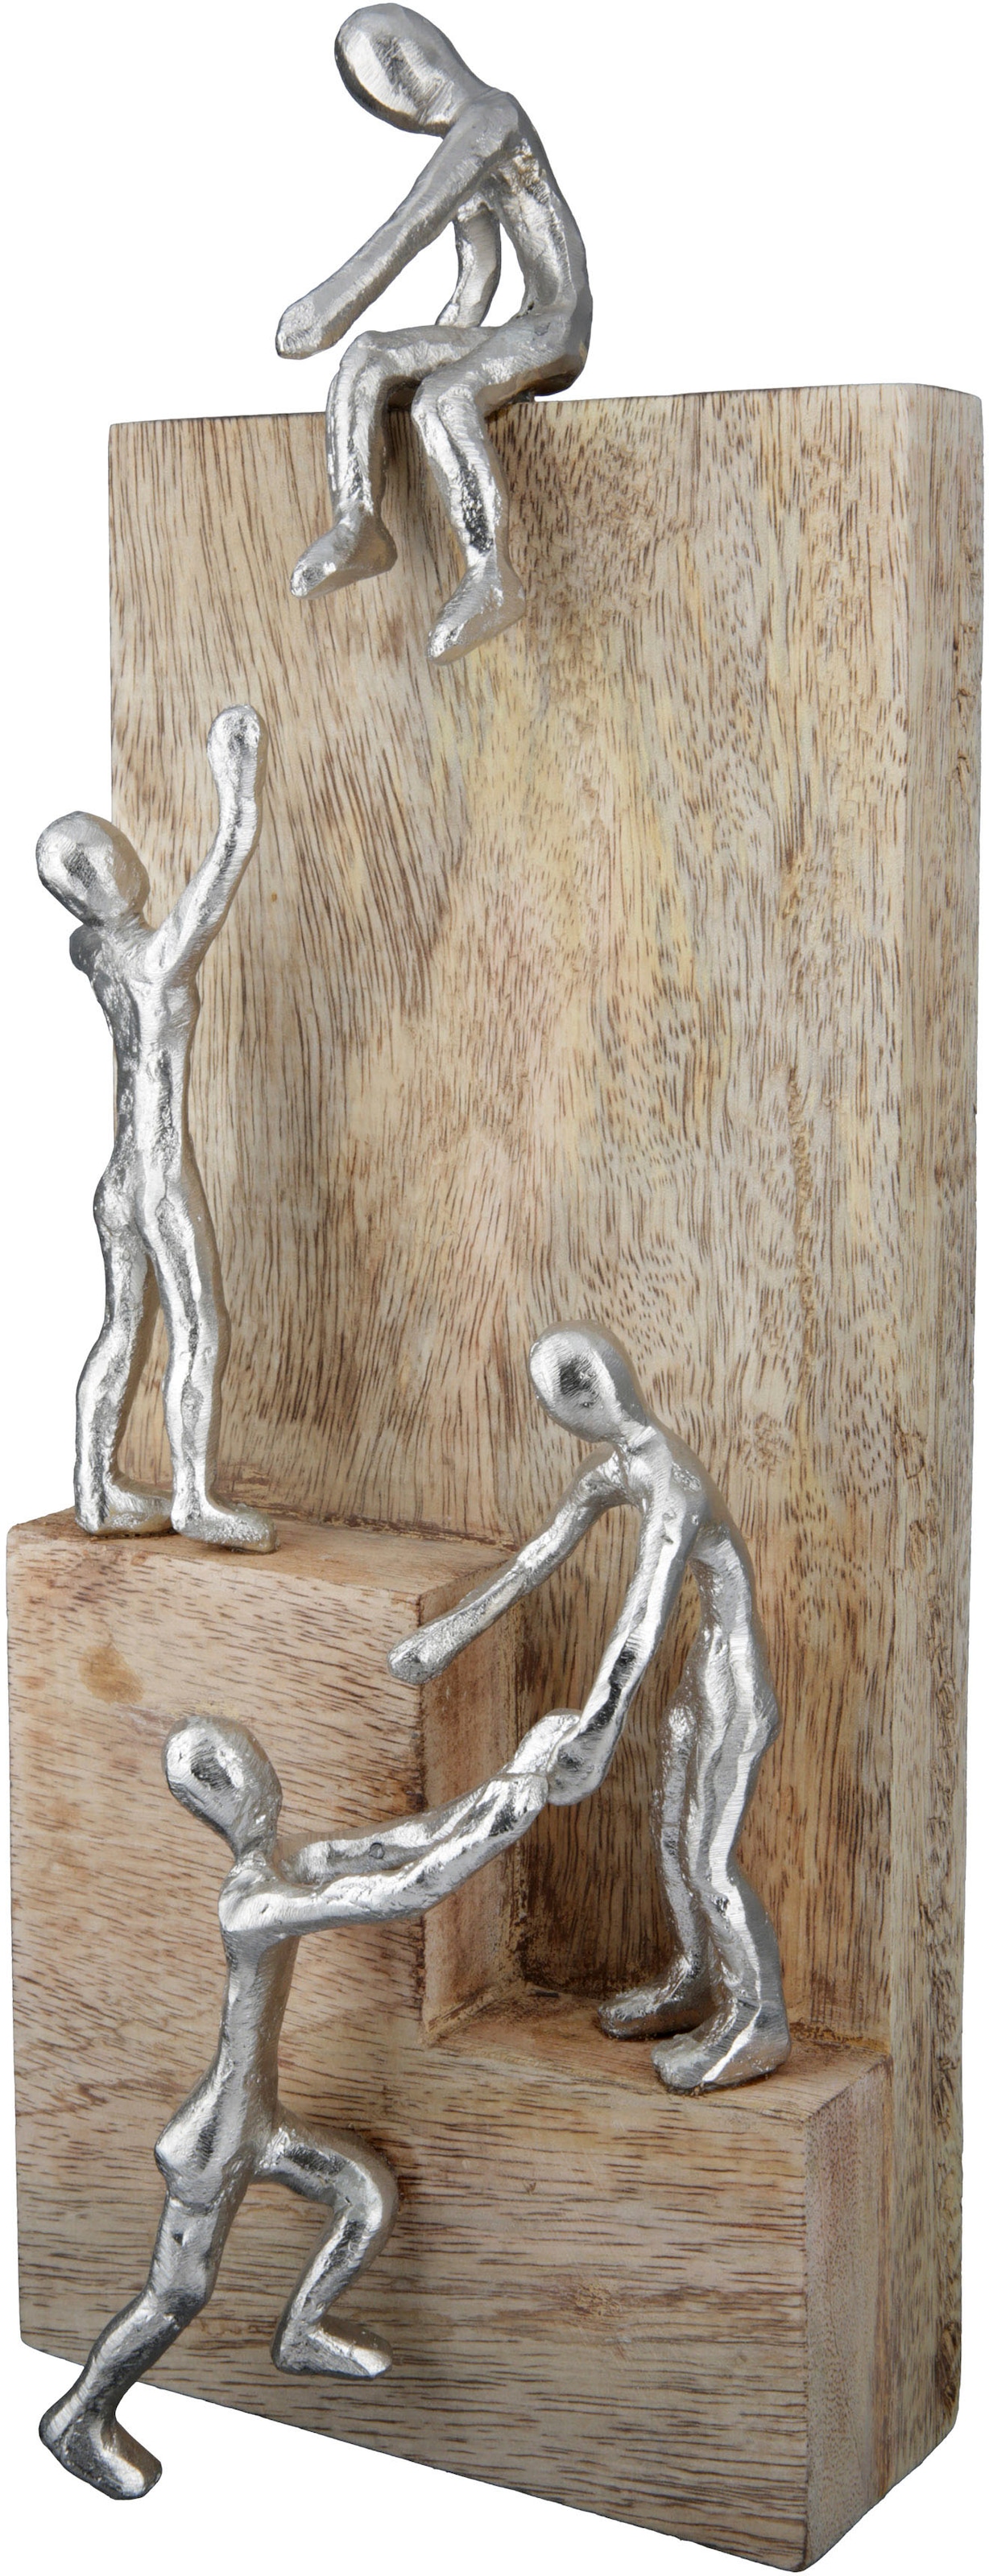 GILDE Dekofigur »Skulptur Helping Hand« acheter confortablement